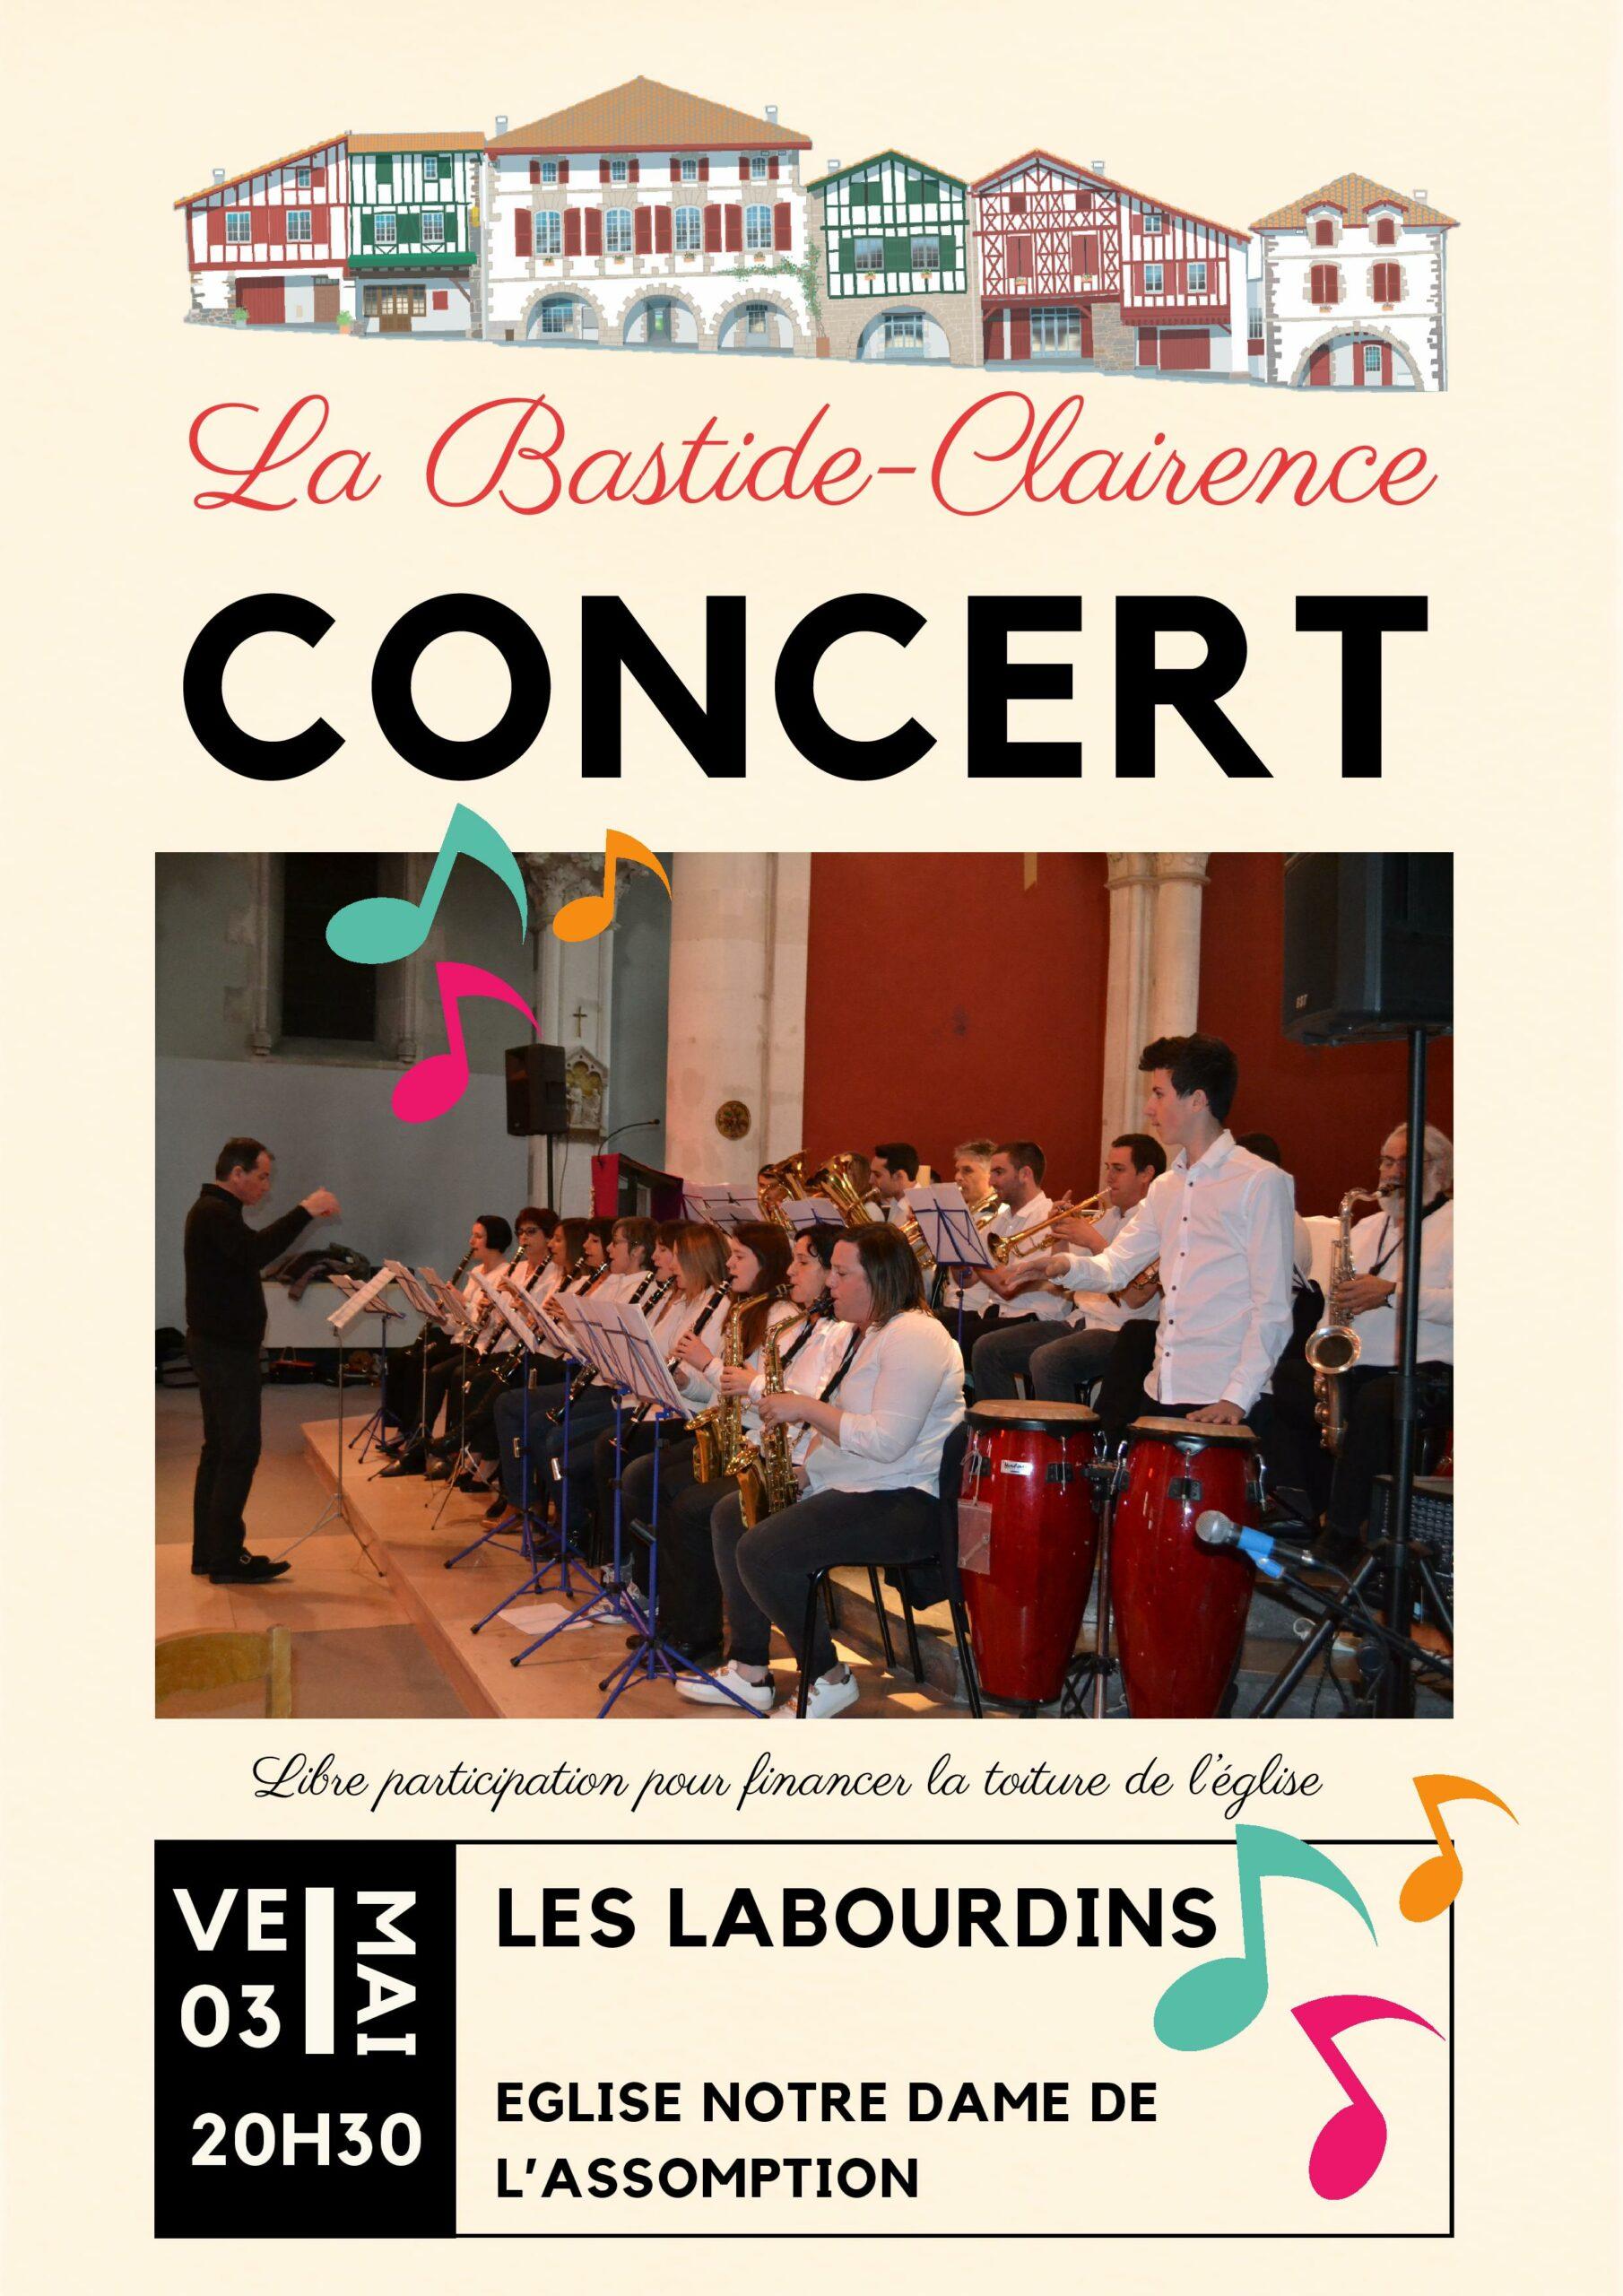 Concert "Les Labourdins"